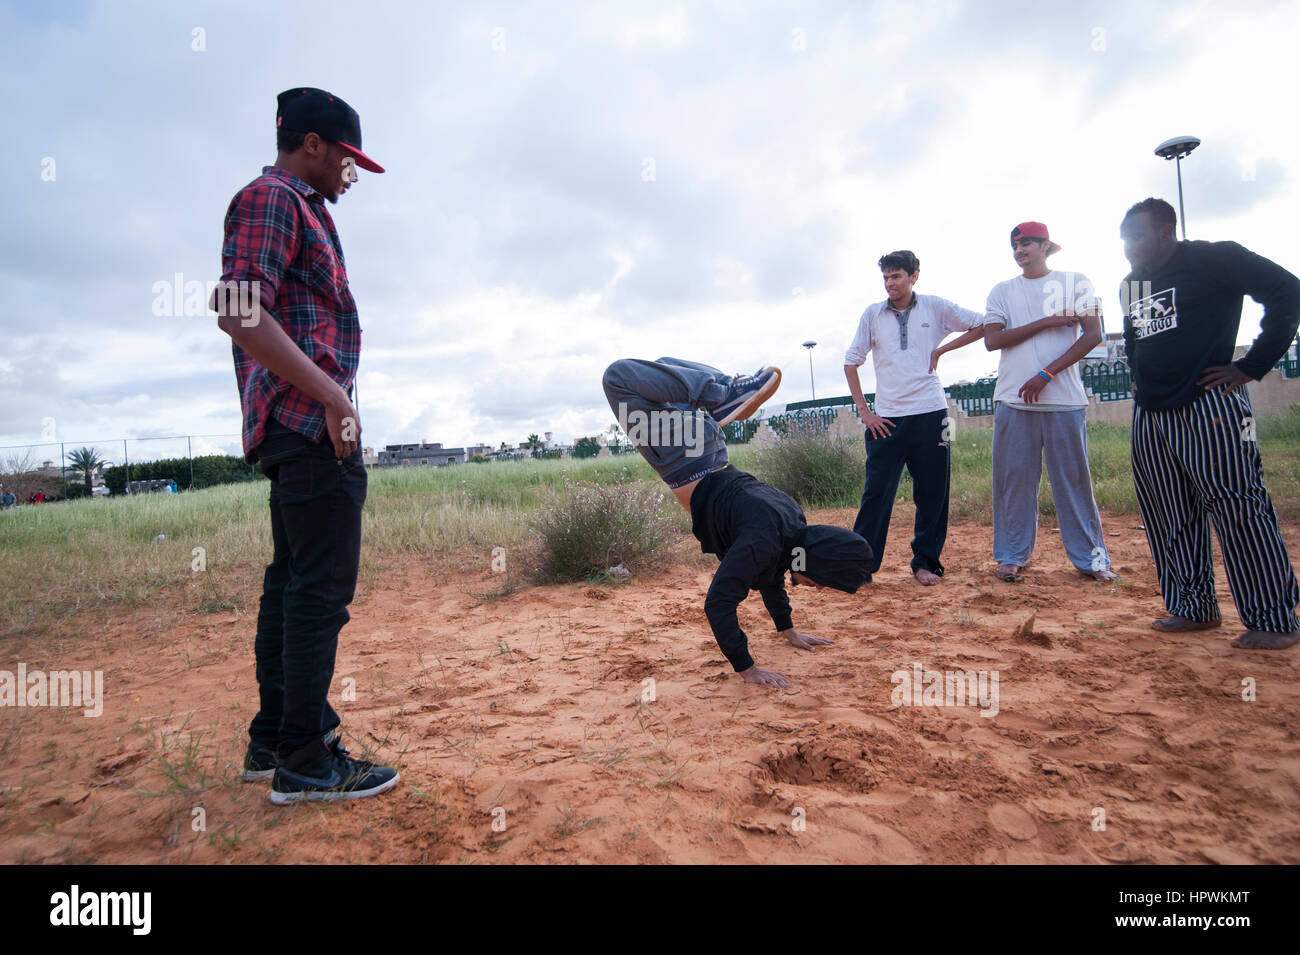 Libia, Tripli: chicos jóvenes practicando parkour se mueve. Foto de stock